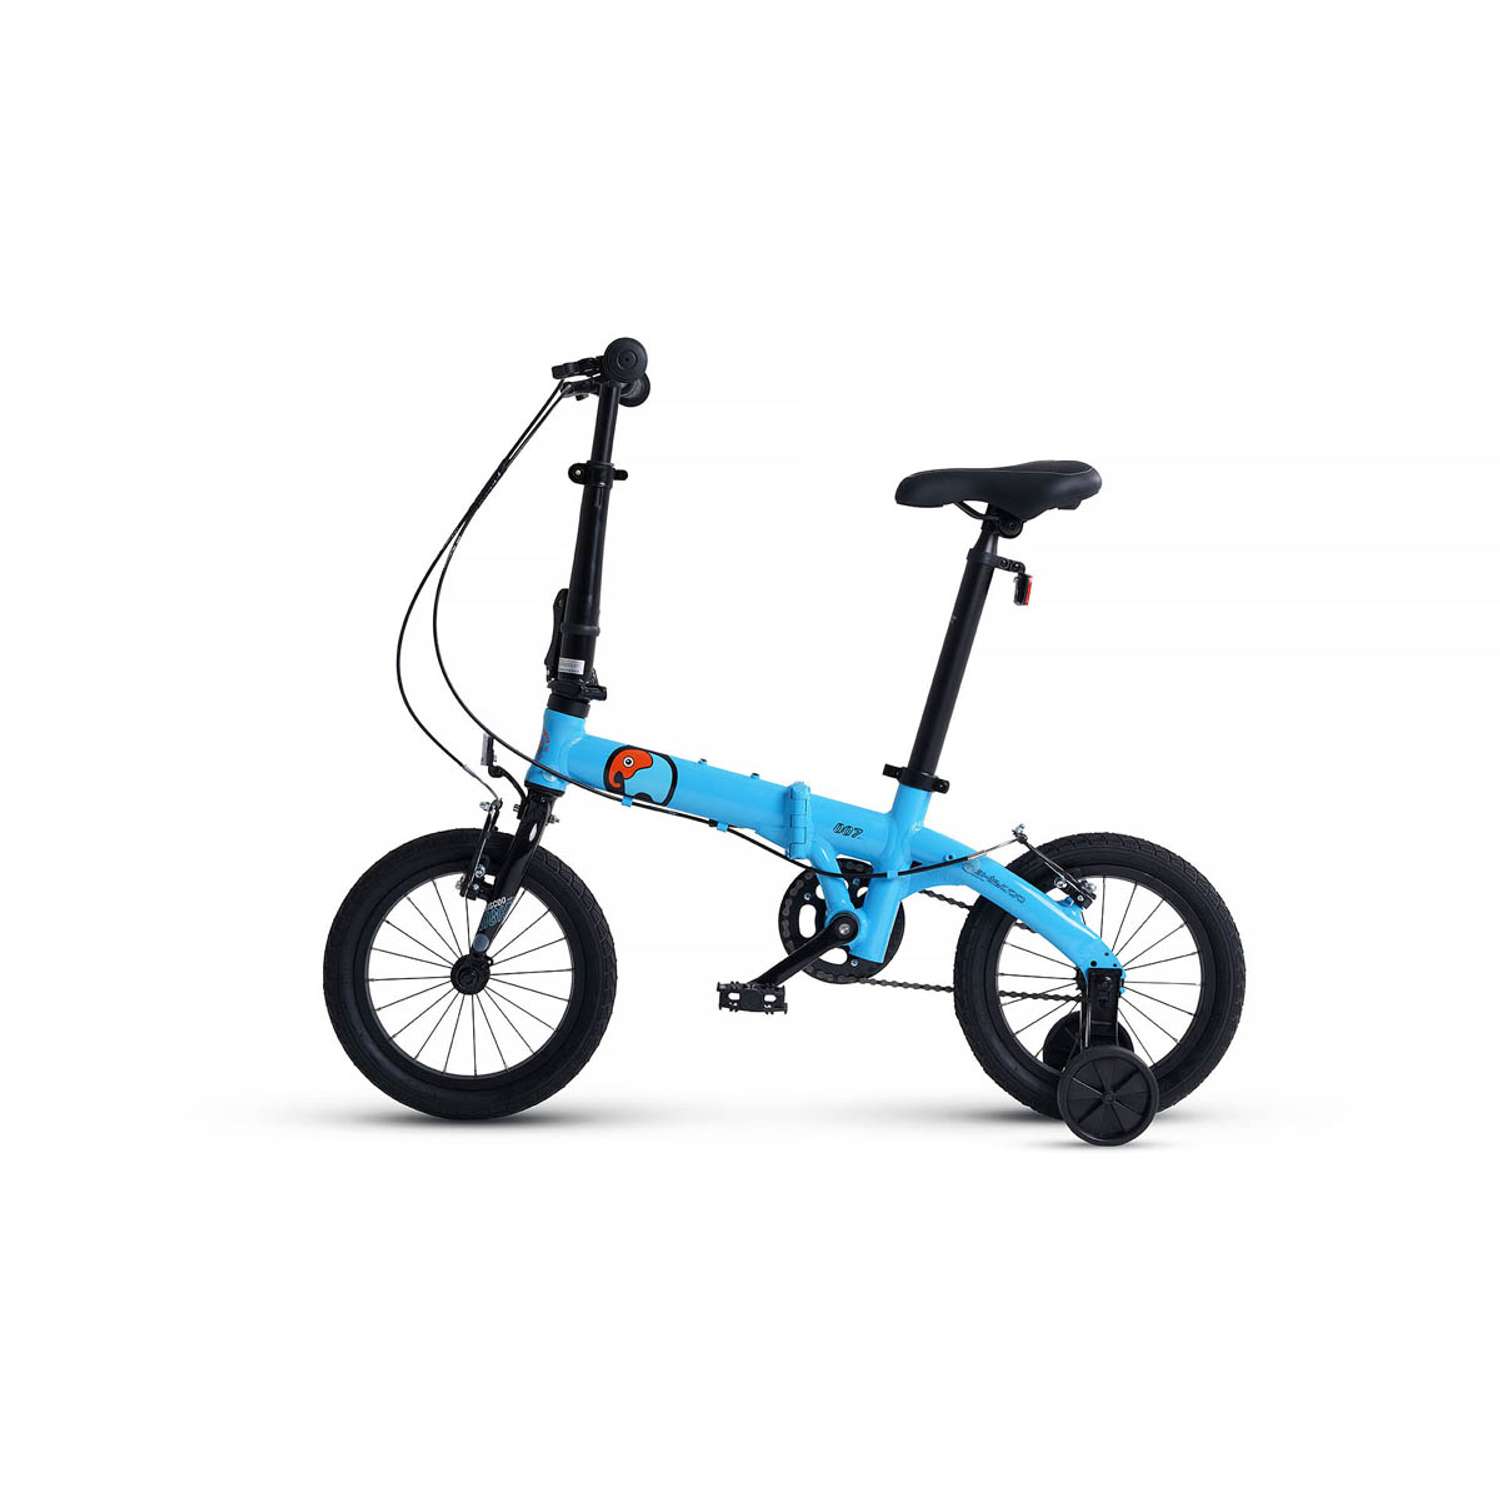 Велосипед Детский Складной Maxiscoo S007 стандарт 14 синий - фото 3